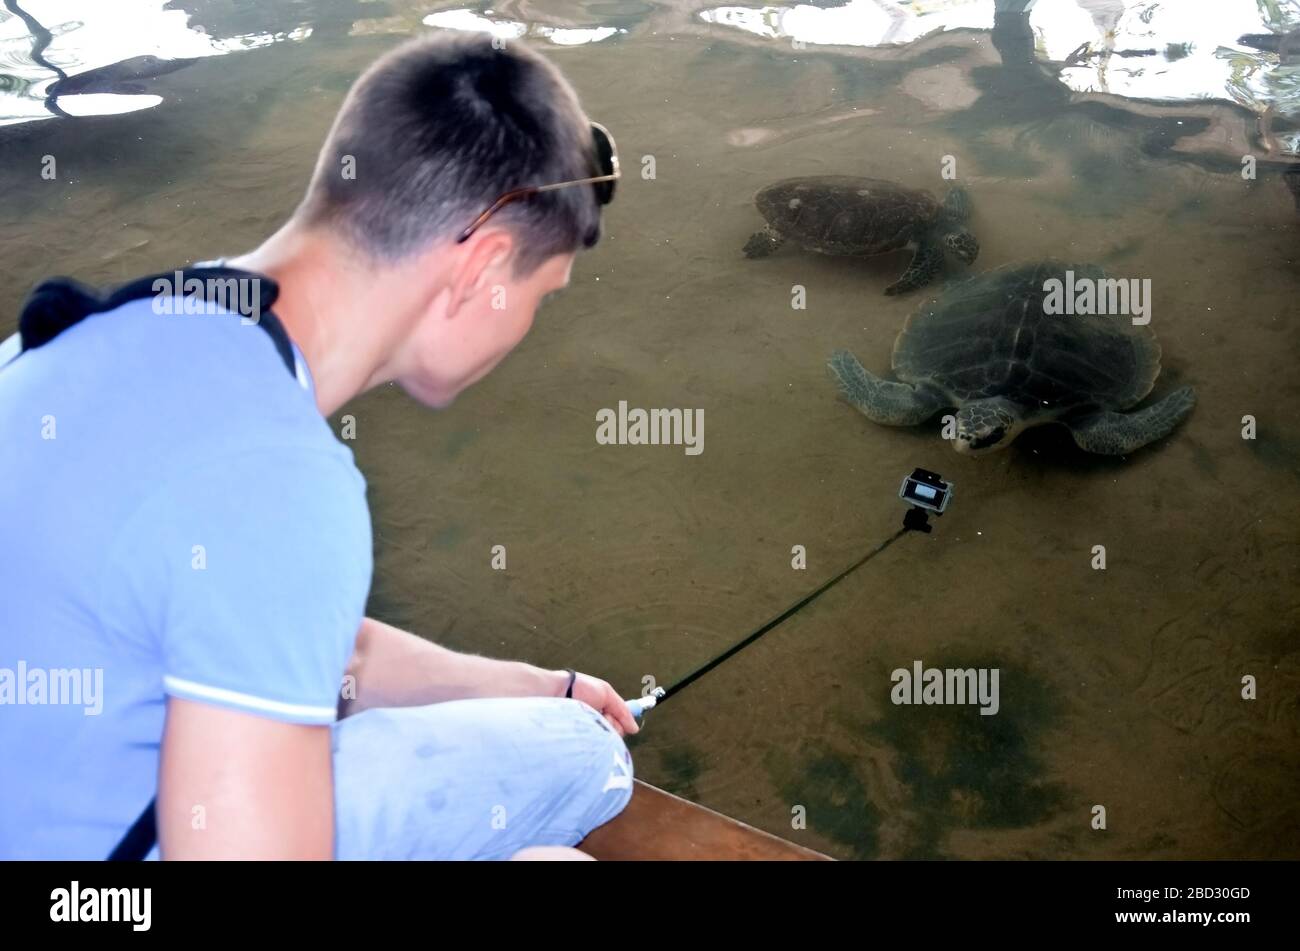 Jeune homme brunette avec appareil photo libère la tortue dans l'eau, le volontaire sauve les tortues, la protection des animaux, le garçon prend des photos de tortue. Sauver les animaux S Banque D'Images